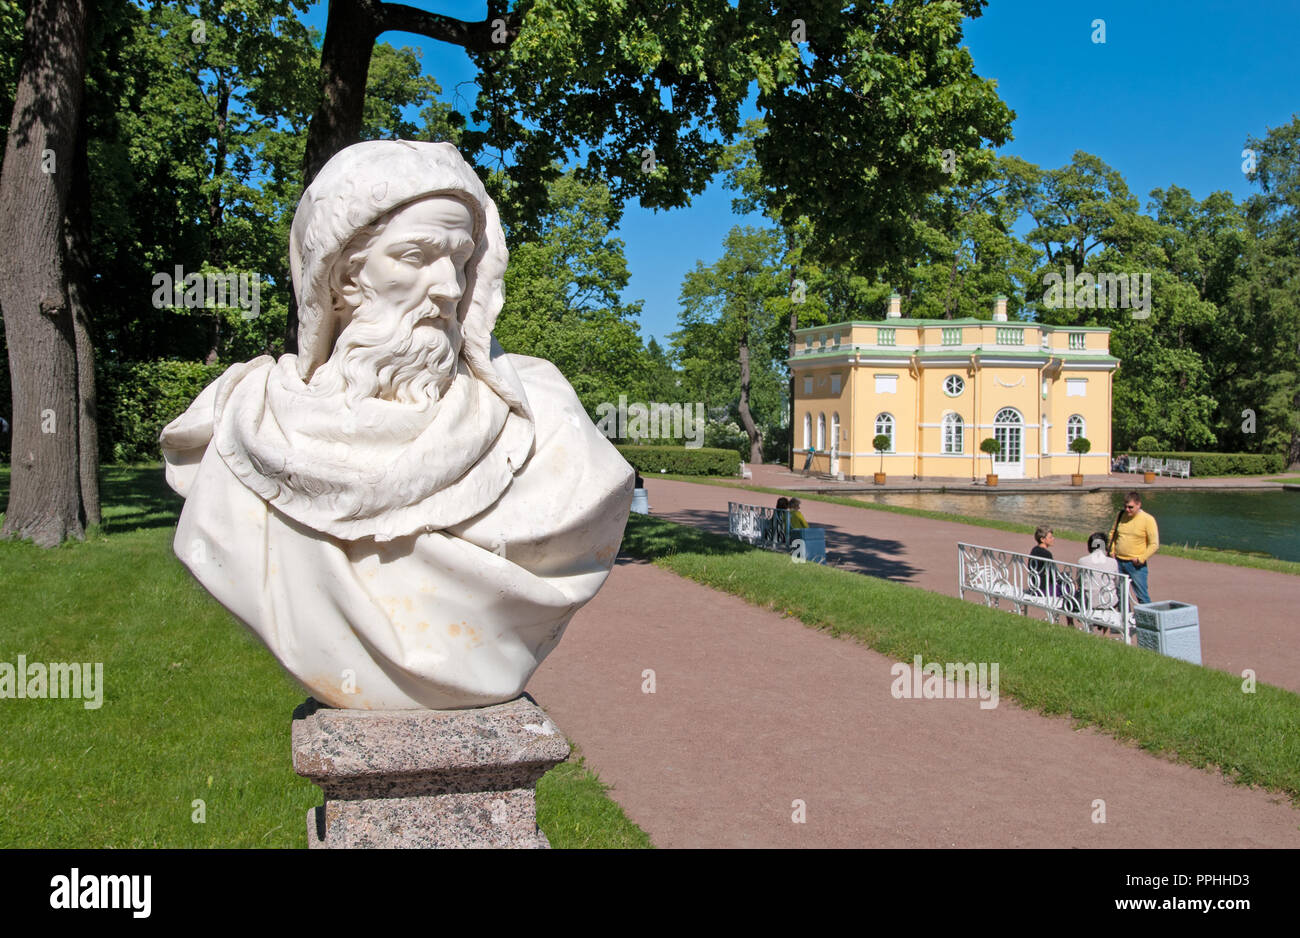 Carskoe Selo, San Pietroburgo, Russia - 7 giugno 2015: la scultura in Catherine Park. Sullo sfondo è superiore Bathhouse Pavilion. Foto Stock